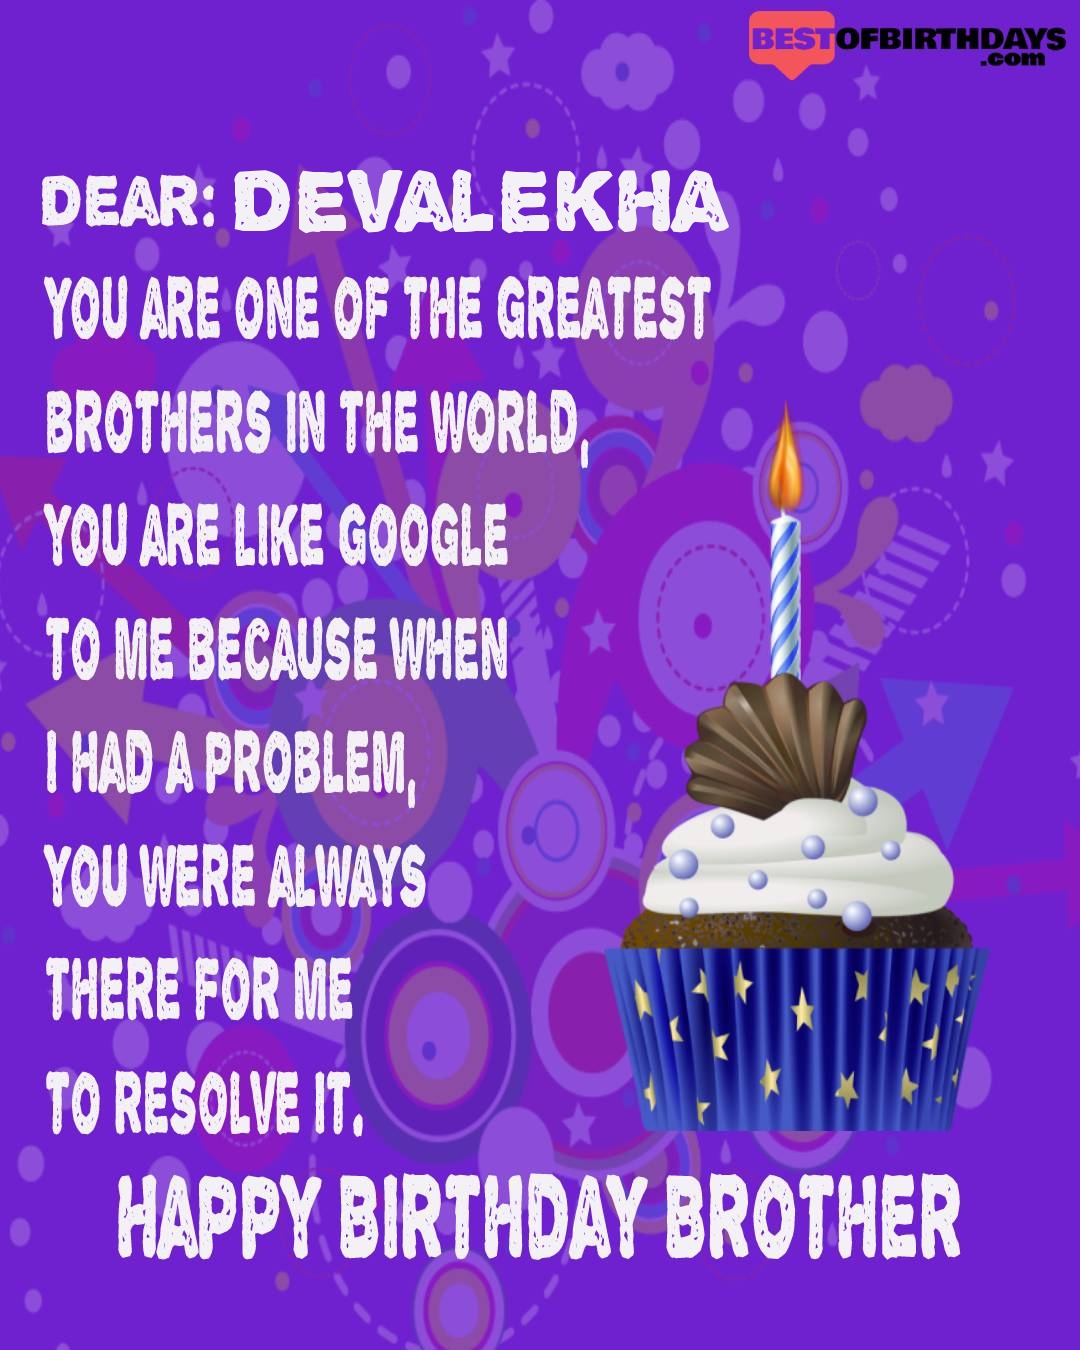 Happy birthday devalekha bhai brother bro